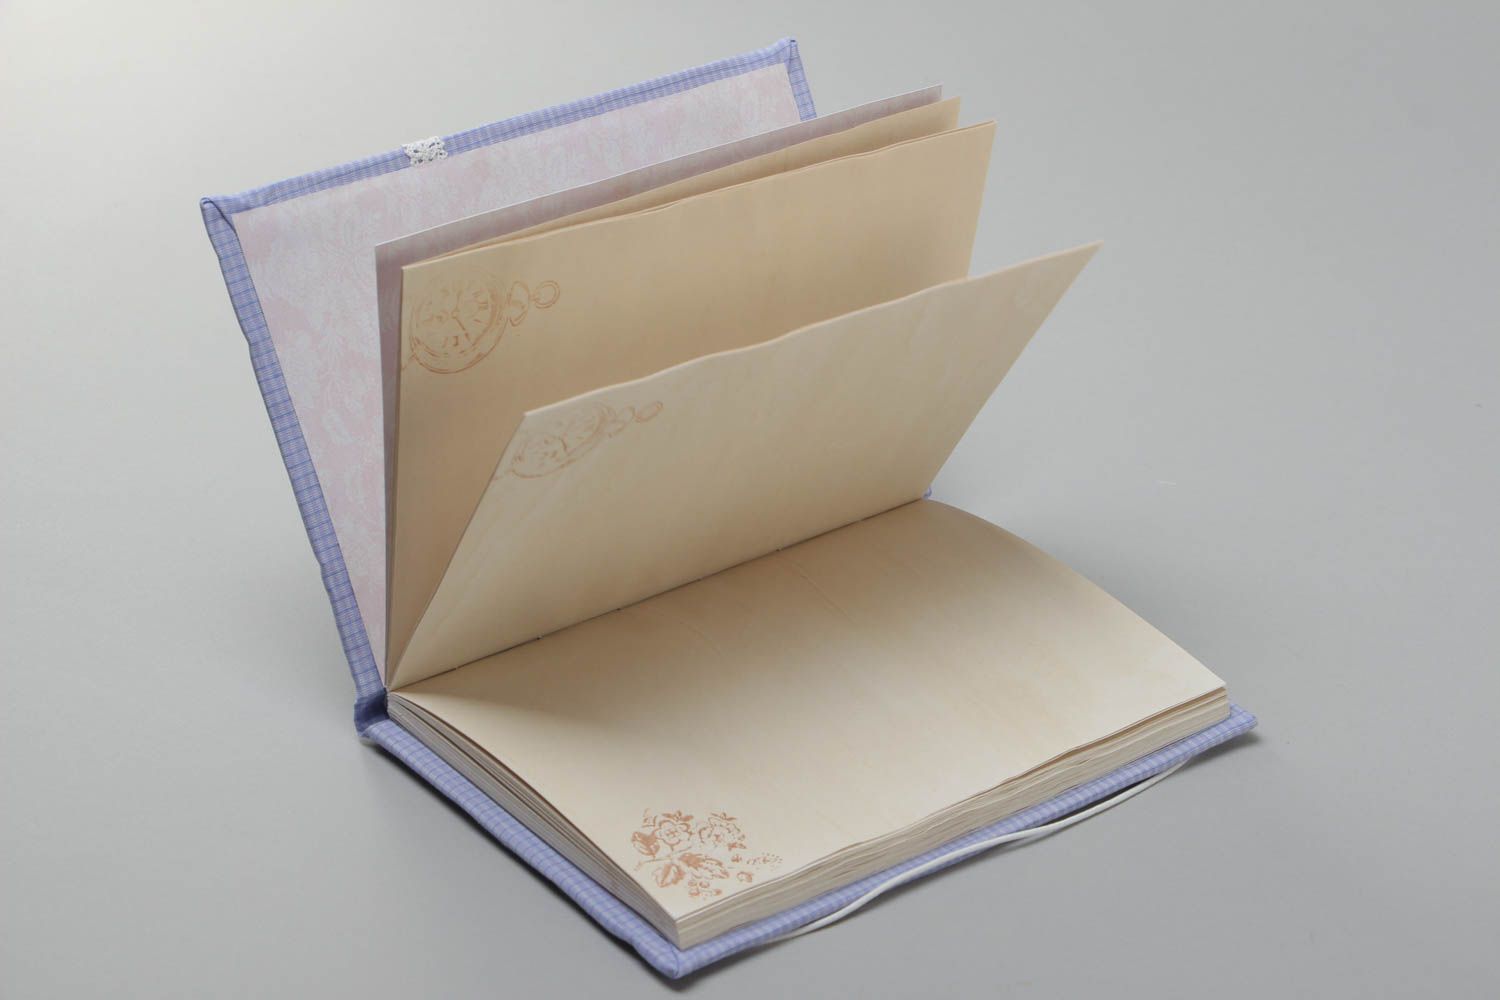 Agenda à couverture rigide en tissu de coton lilas avec dentelle fait main photo 3